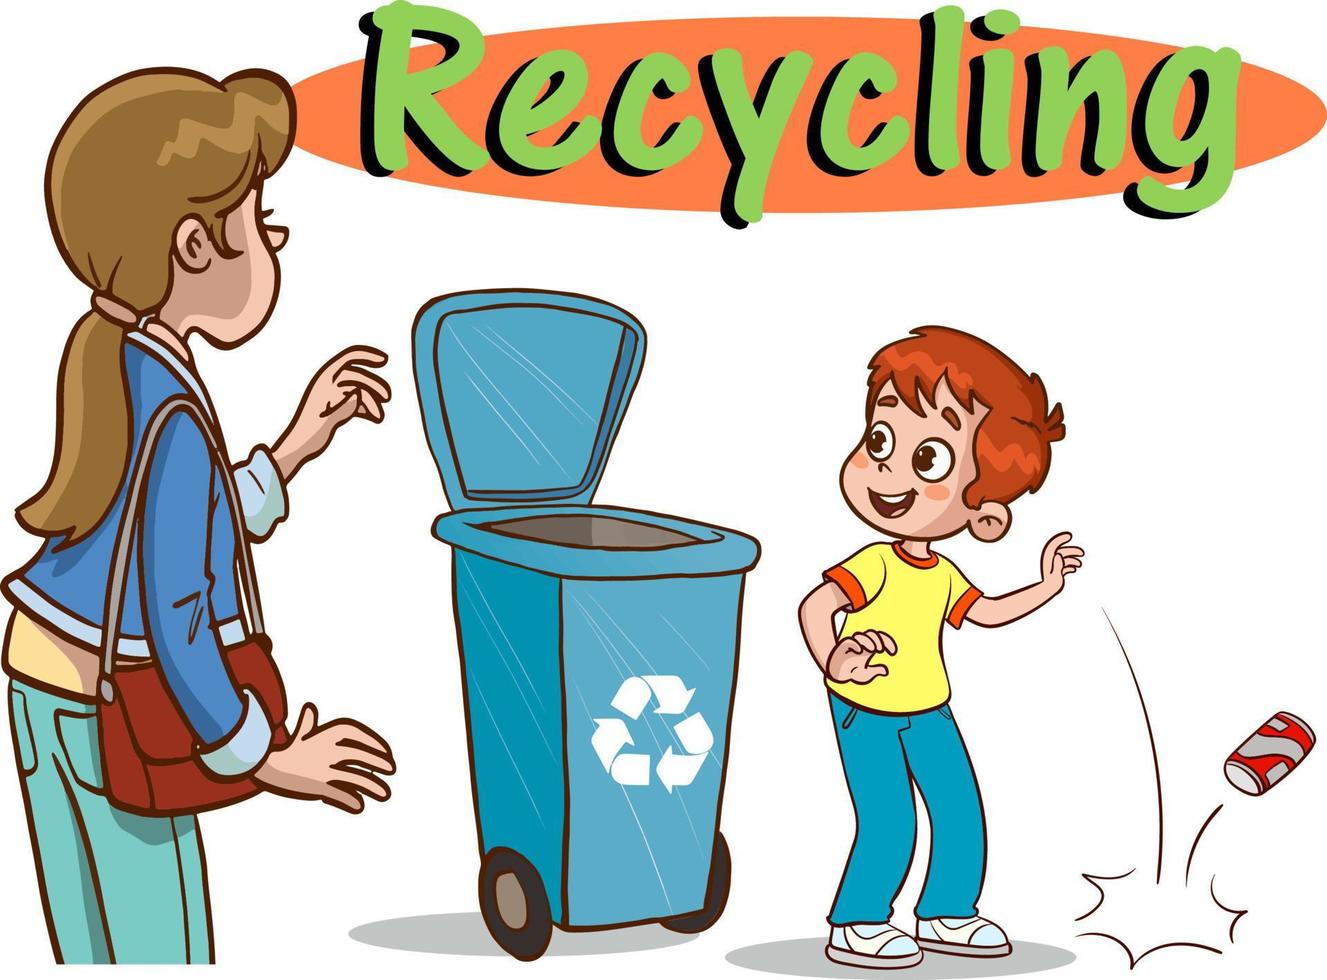 bambini lancio spazzatura nel il raccolta differenziata bin.bambini inquinanti il ambiente cartone animato vettore